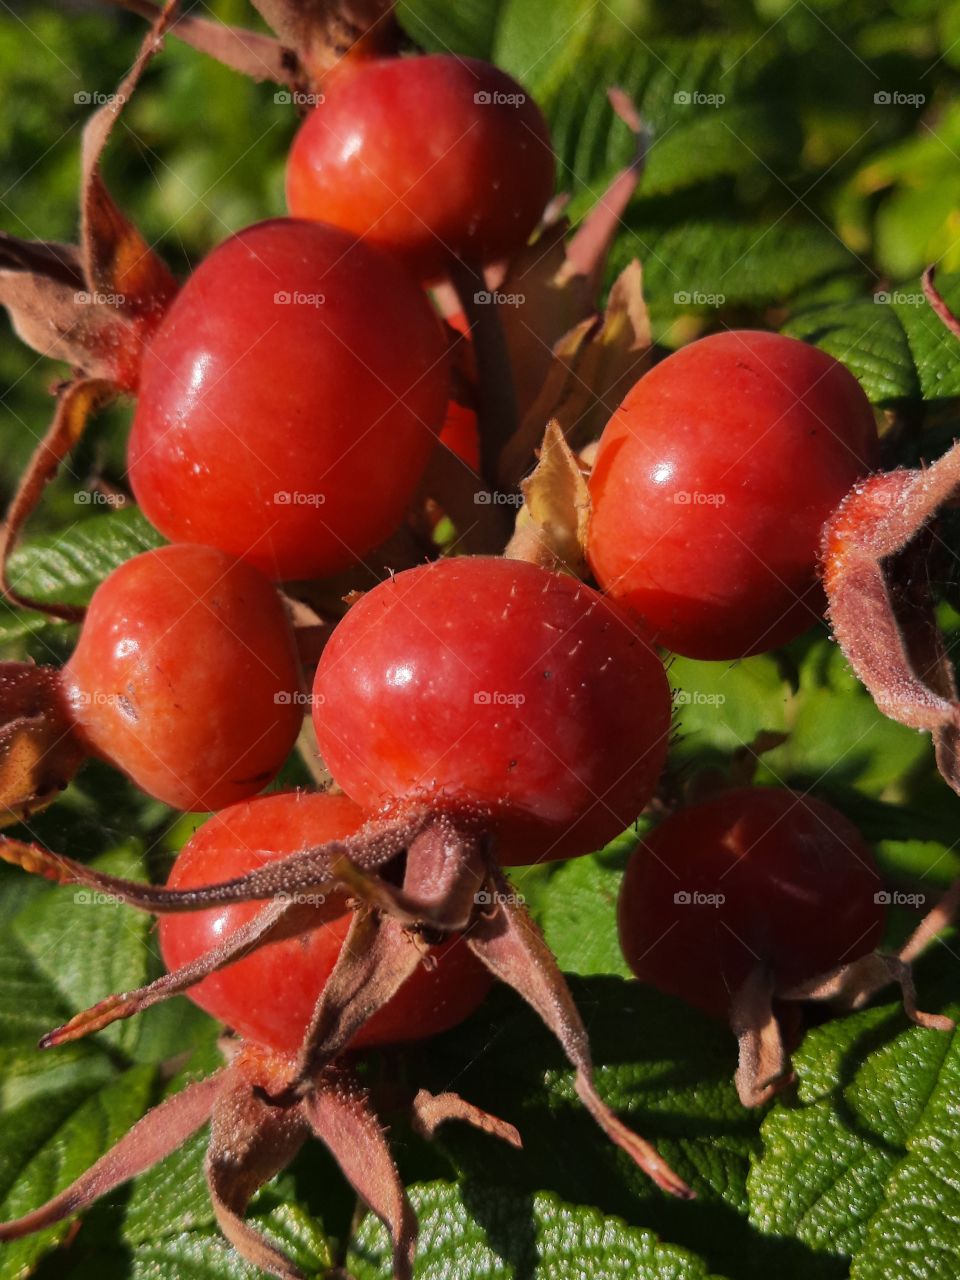 sunlit fruits of Rugosa rose